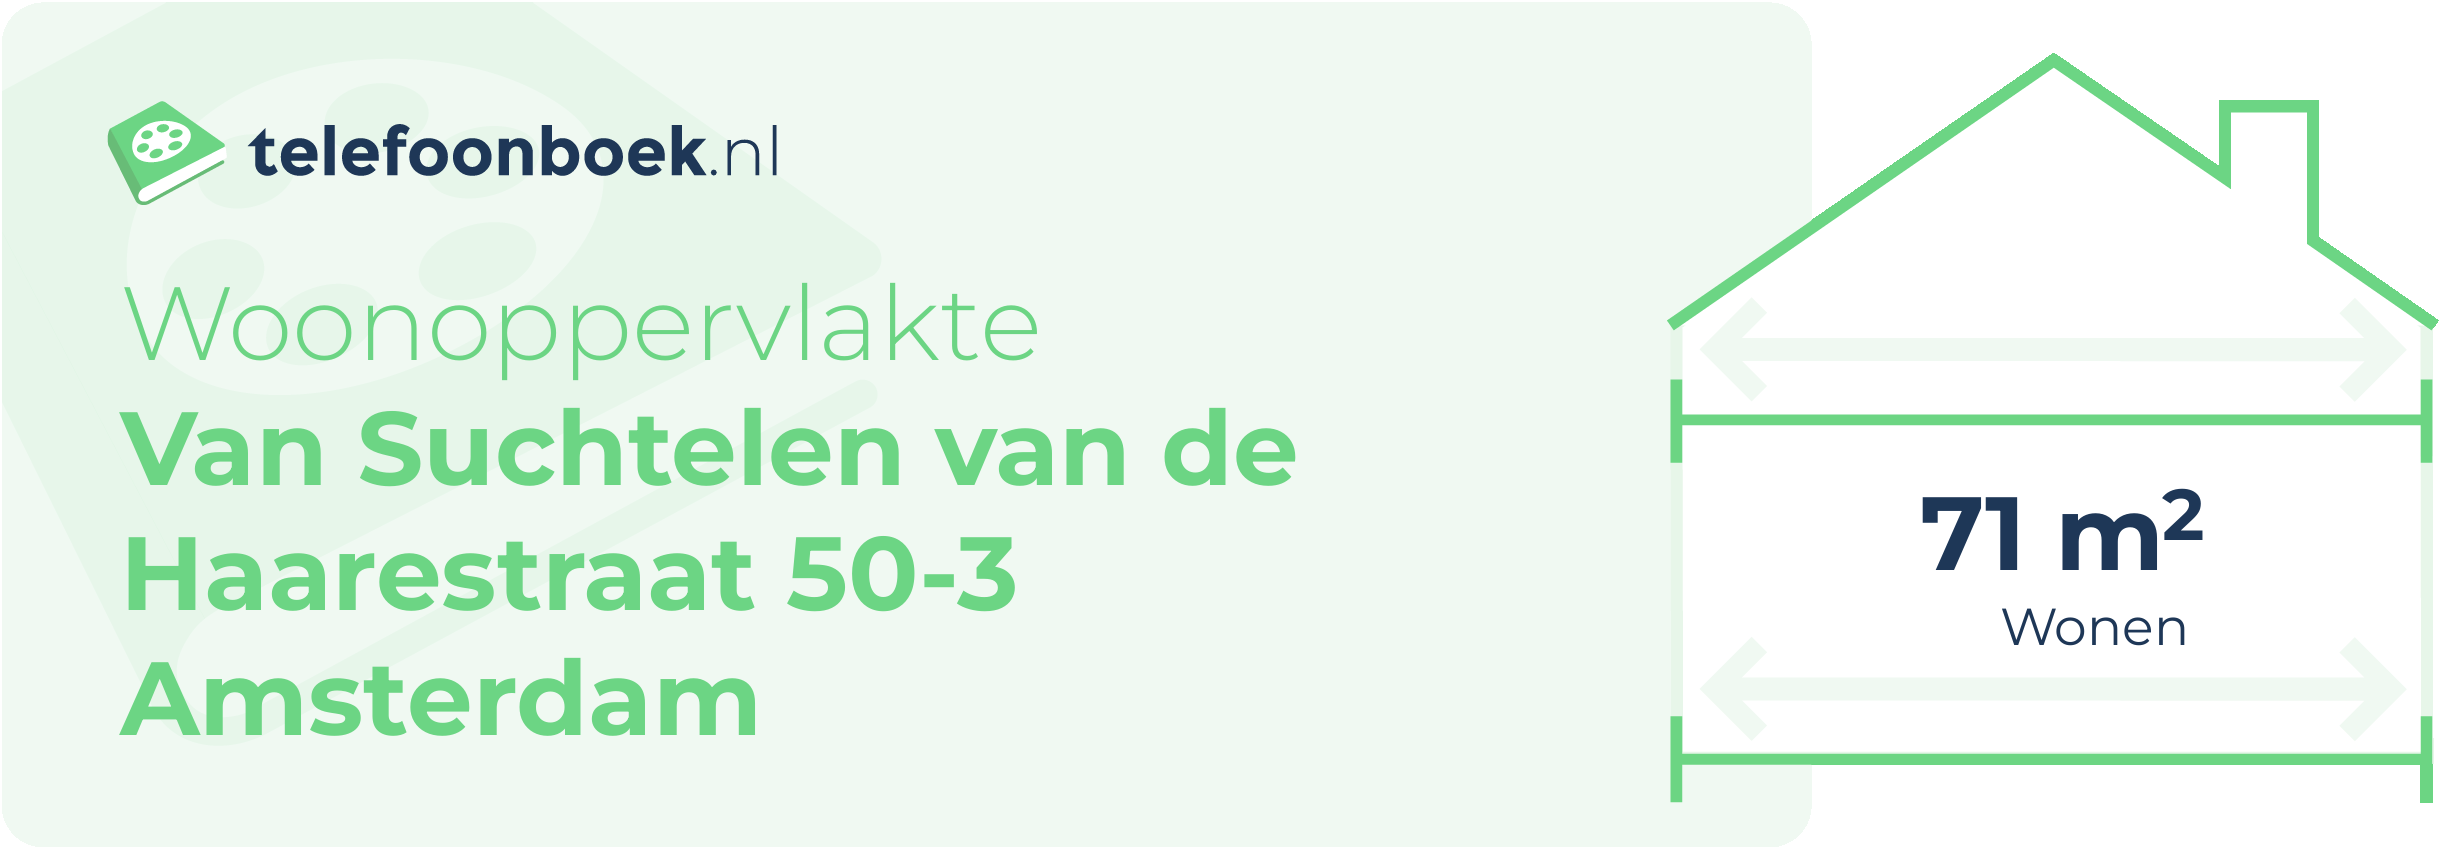 Woonoppervlakte Van Suchtelen Van De Haarestraat 50-3 Amsterdam